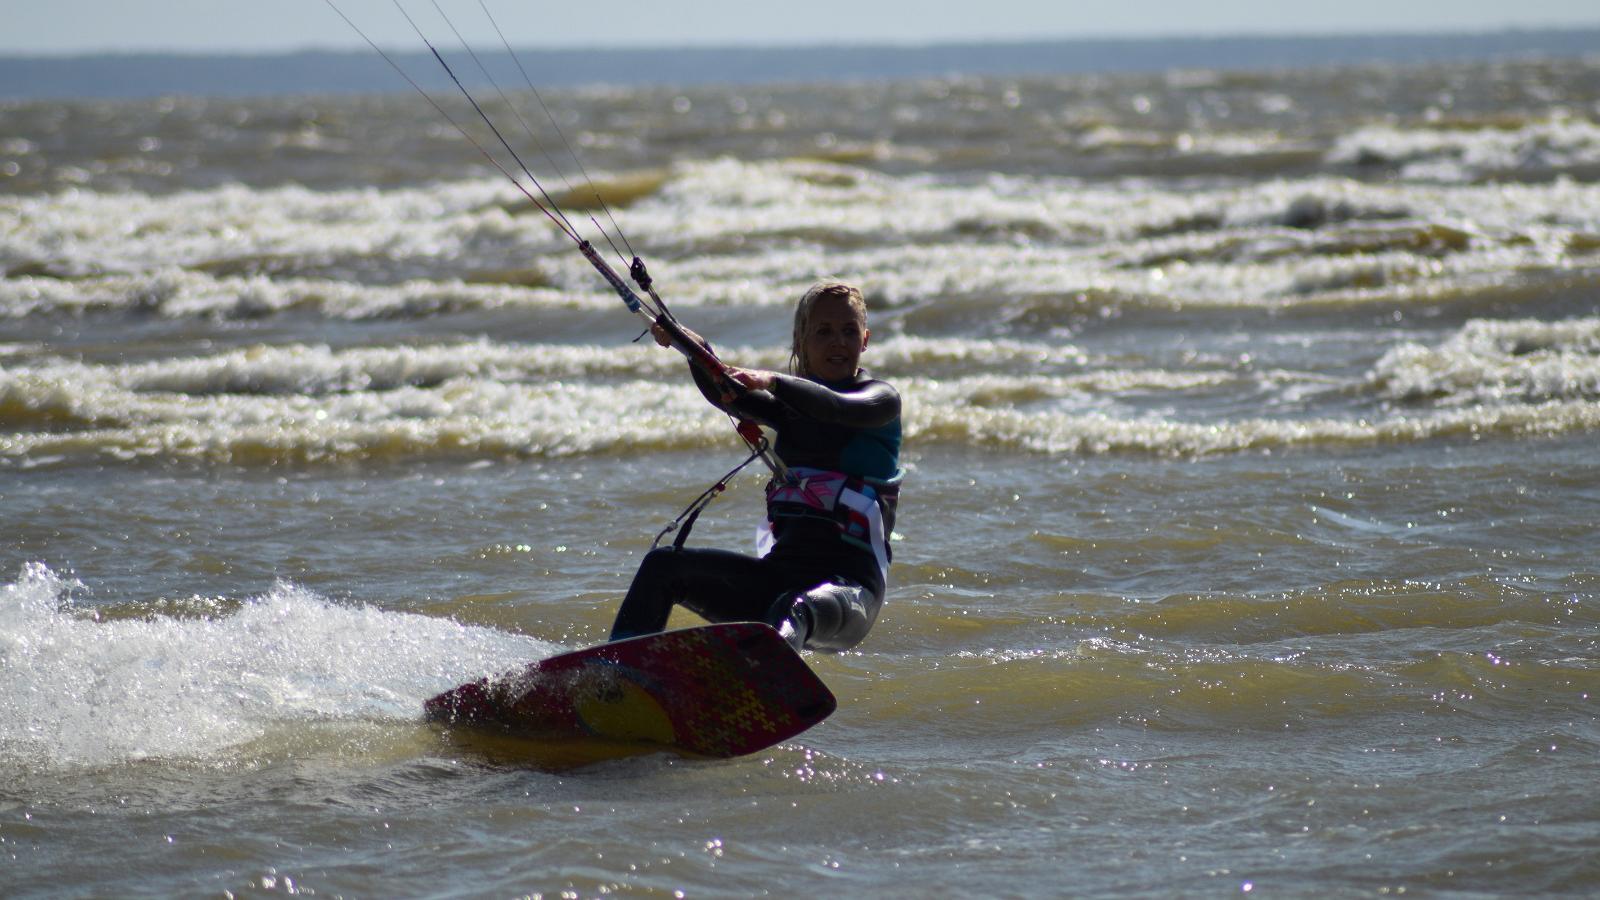 Surf Center kitesurf training in Pärnu